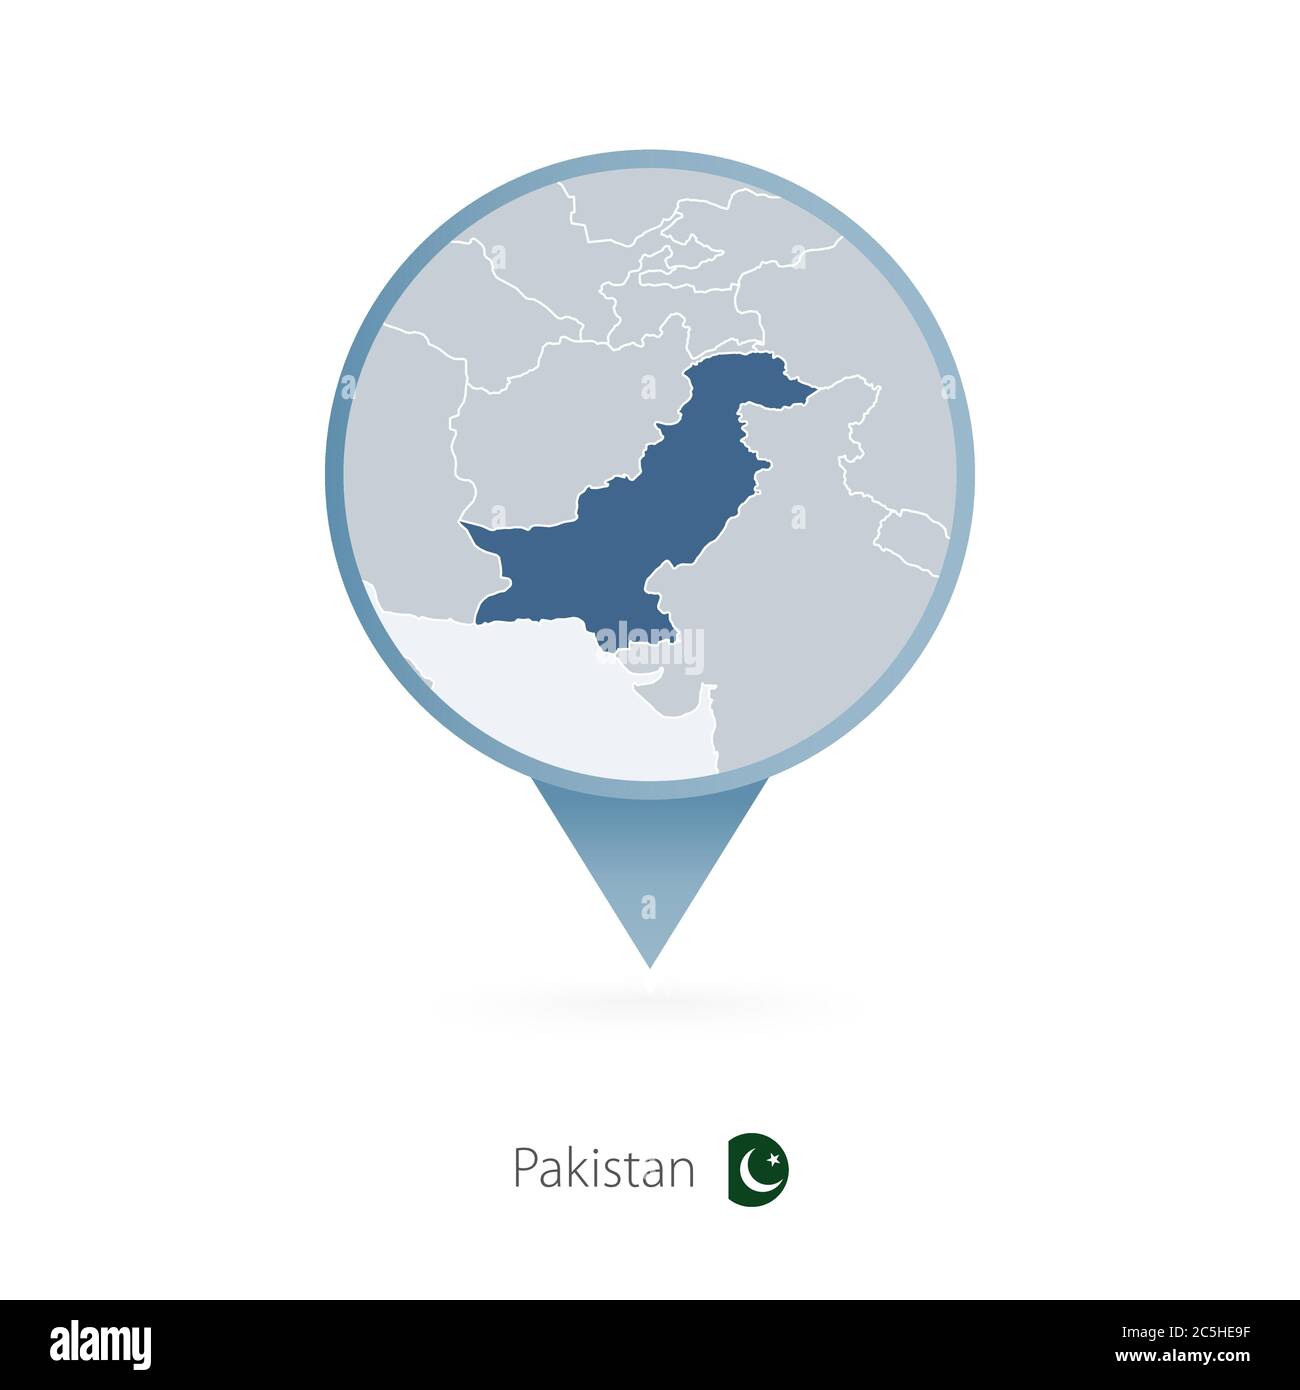 Mappa con mappa dettagliata del Pakistan e dei paesi vicini. Illustrazione Vettoriale